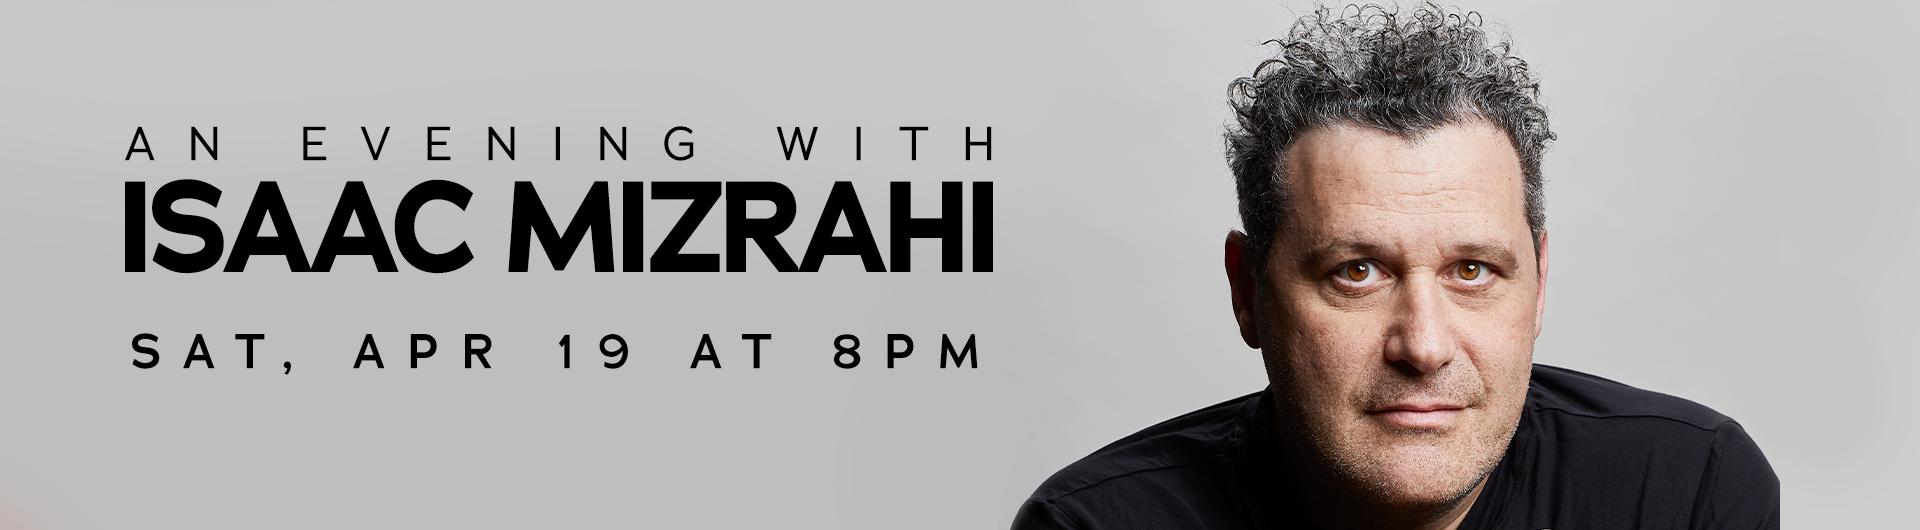 Isaac Mizrahi in a black top next to the headline: An Evening with Isaac Mizrahi